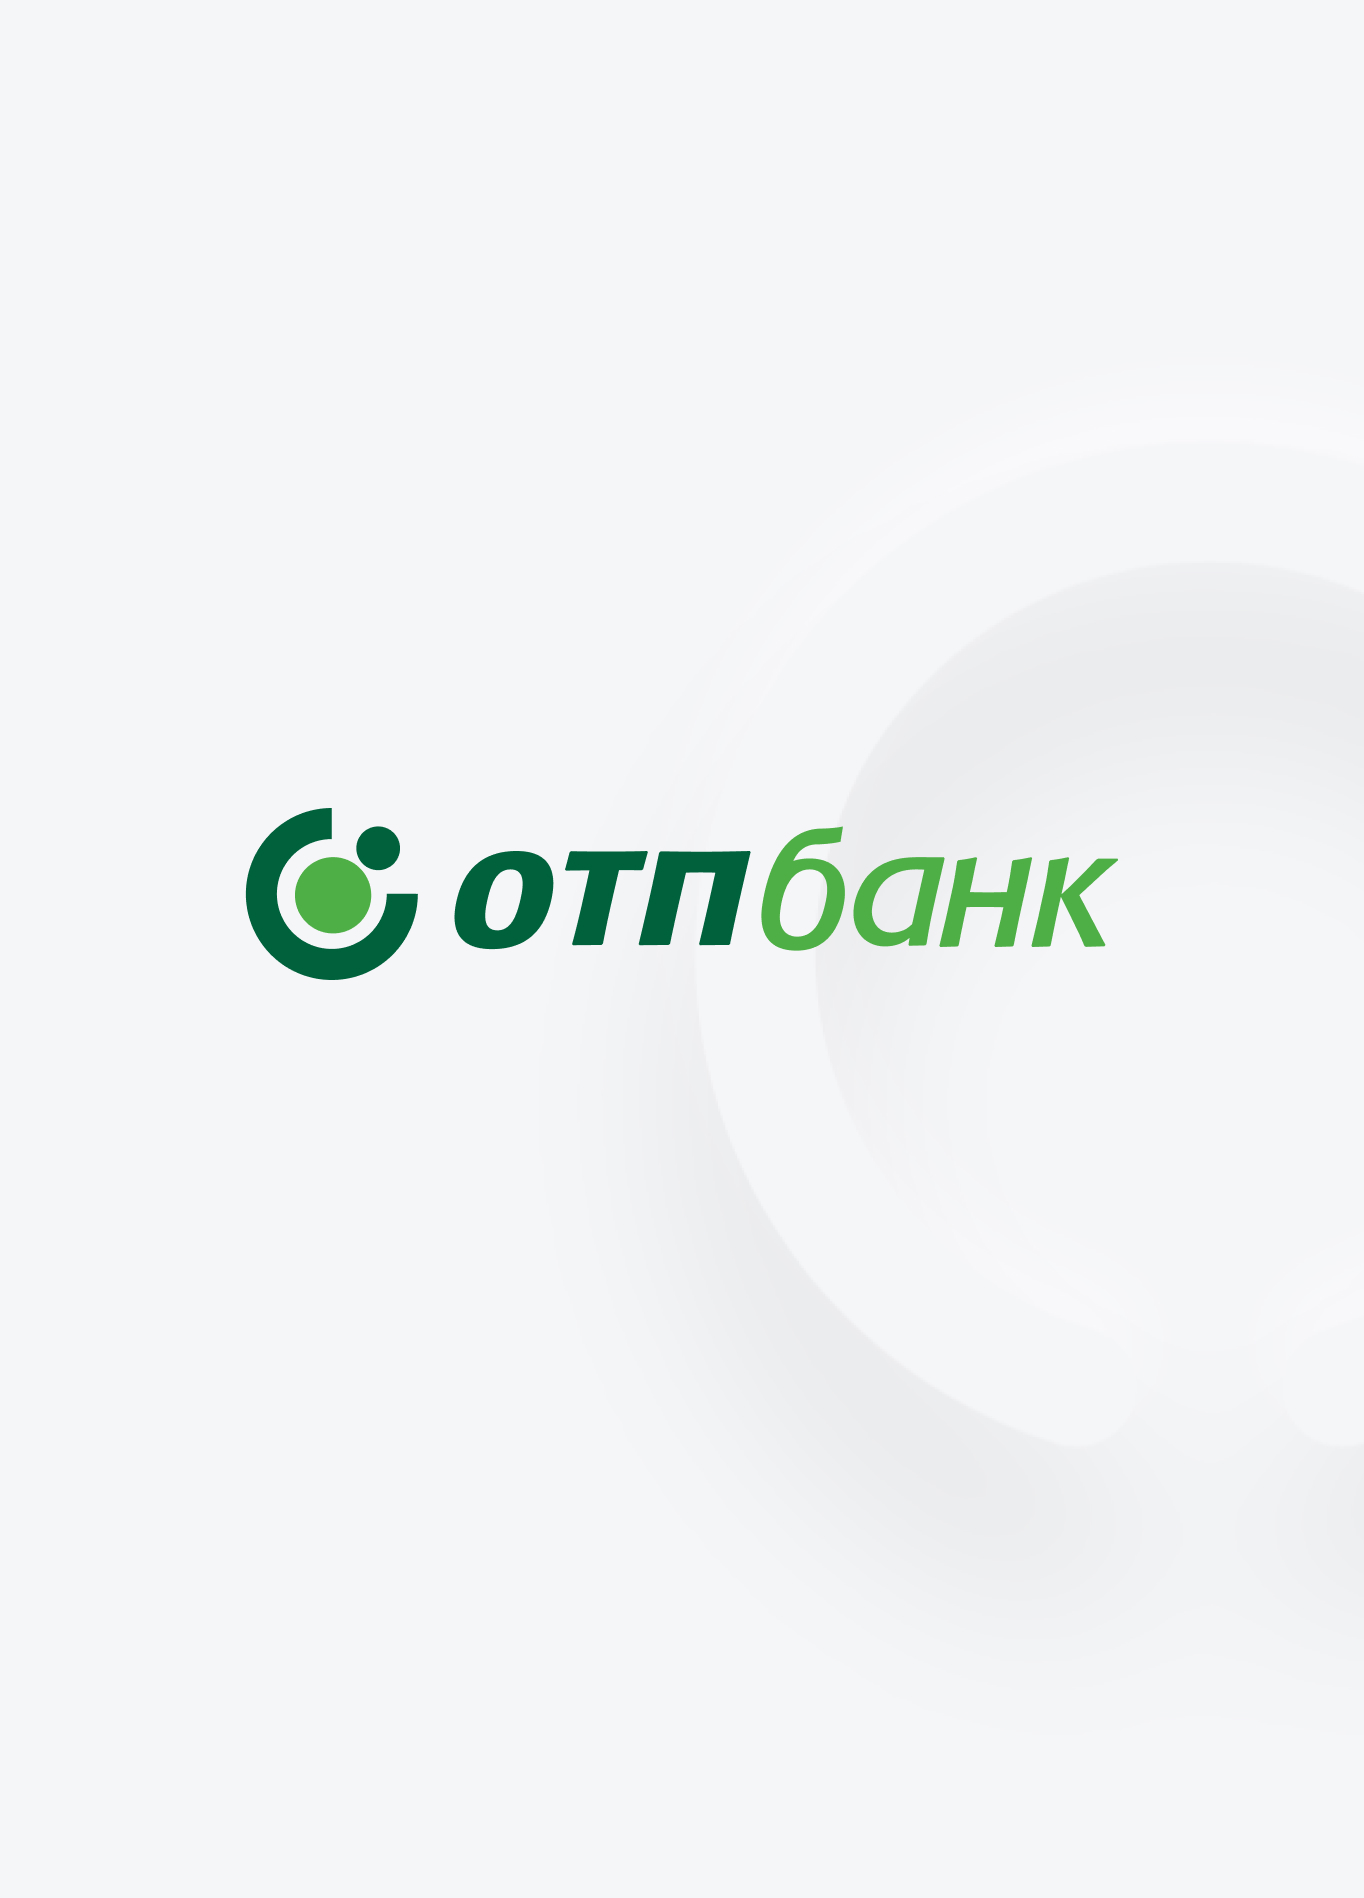 ОТП банк логотип